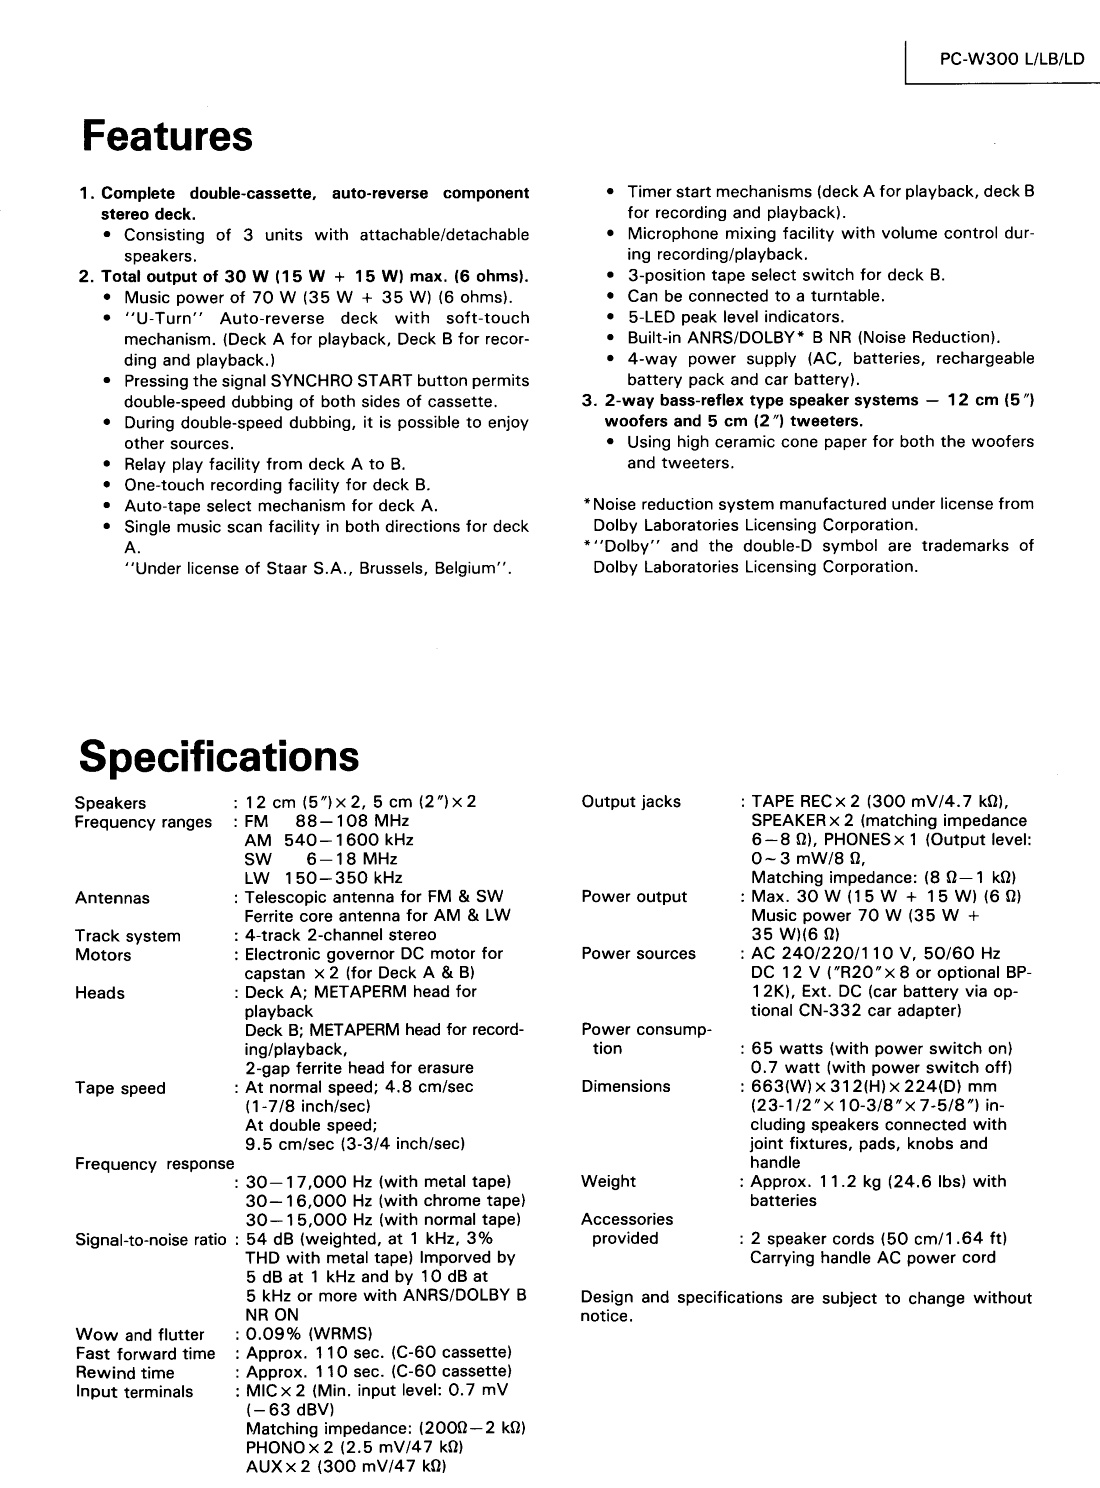 JVC PC-W 300 L-Daten-1984.jpg